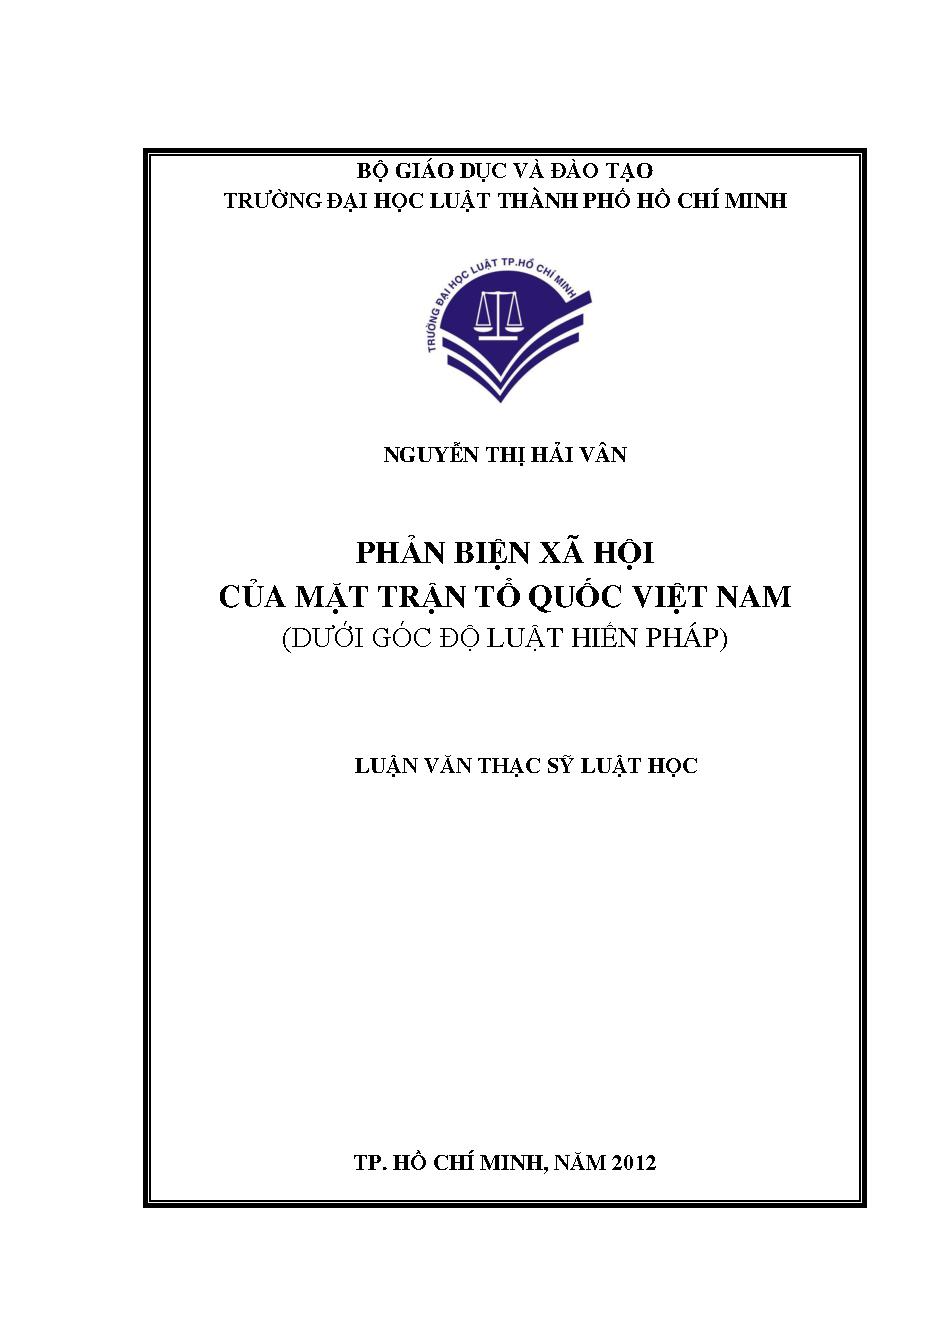 Phản biện xã hội của mặt trận Tổ Quốc Việt Nam (Dưới góc độ luật Hiến pháp)